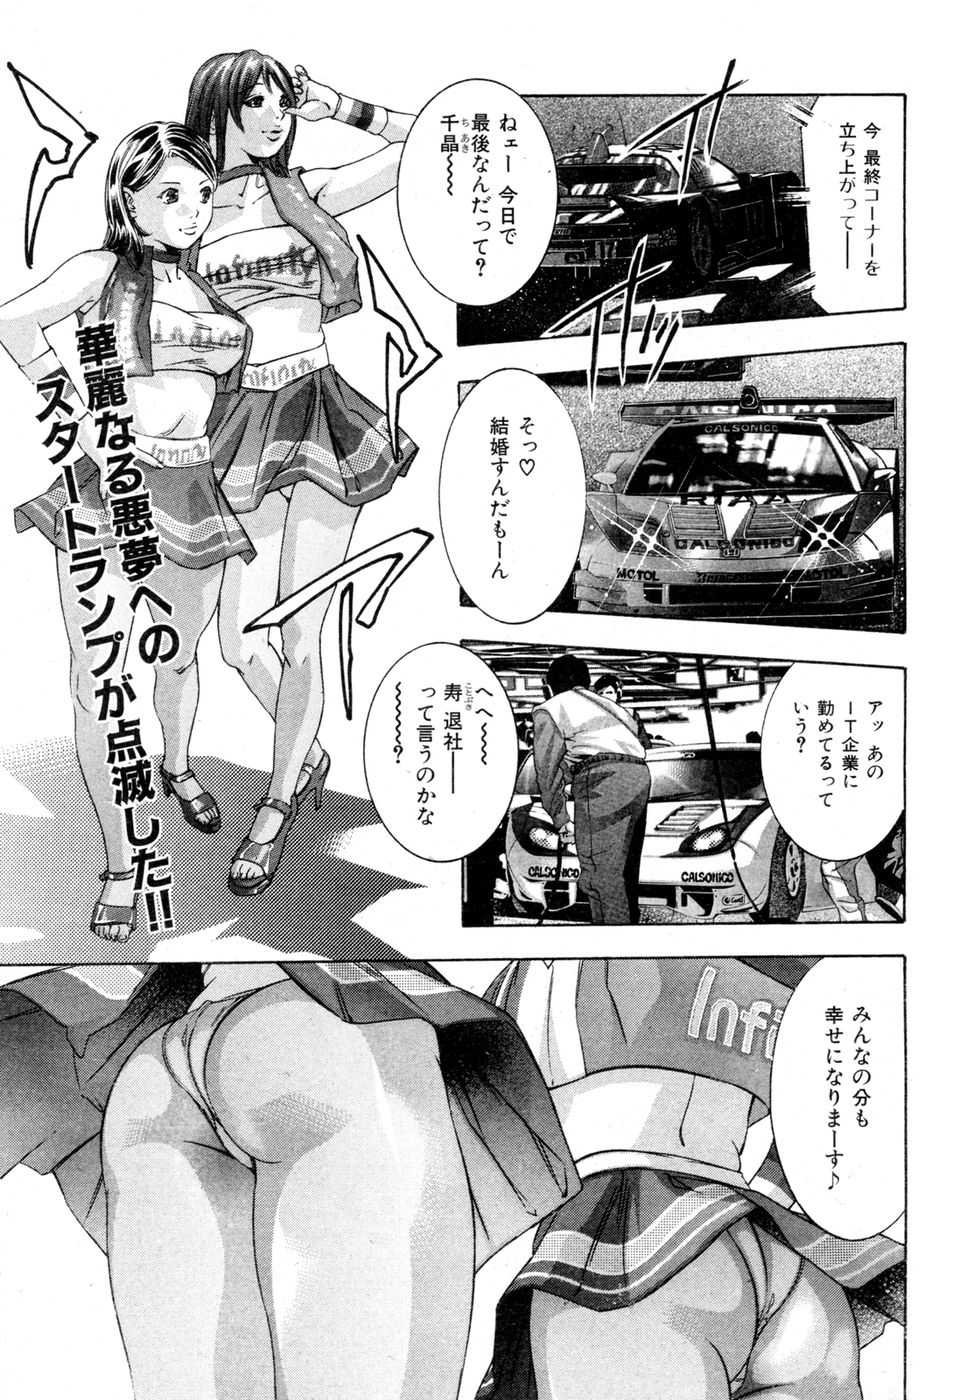 [2007.04.15]Comic Kairakuten Beast Volume 18 